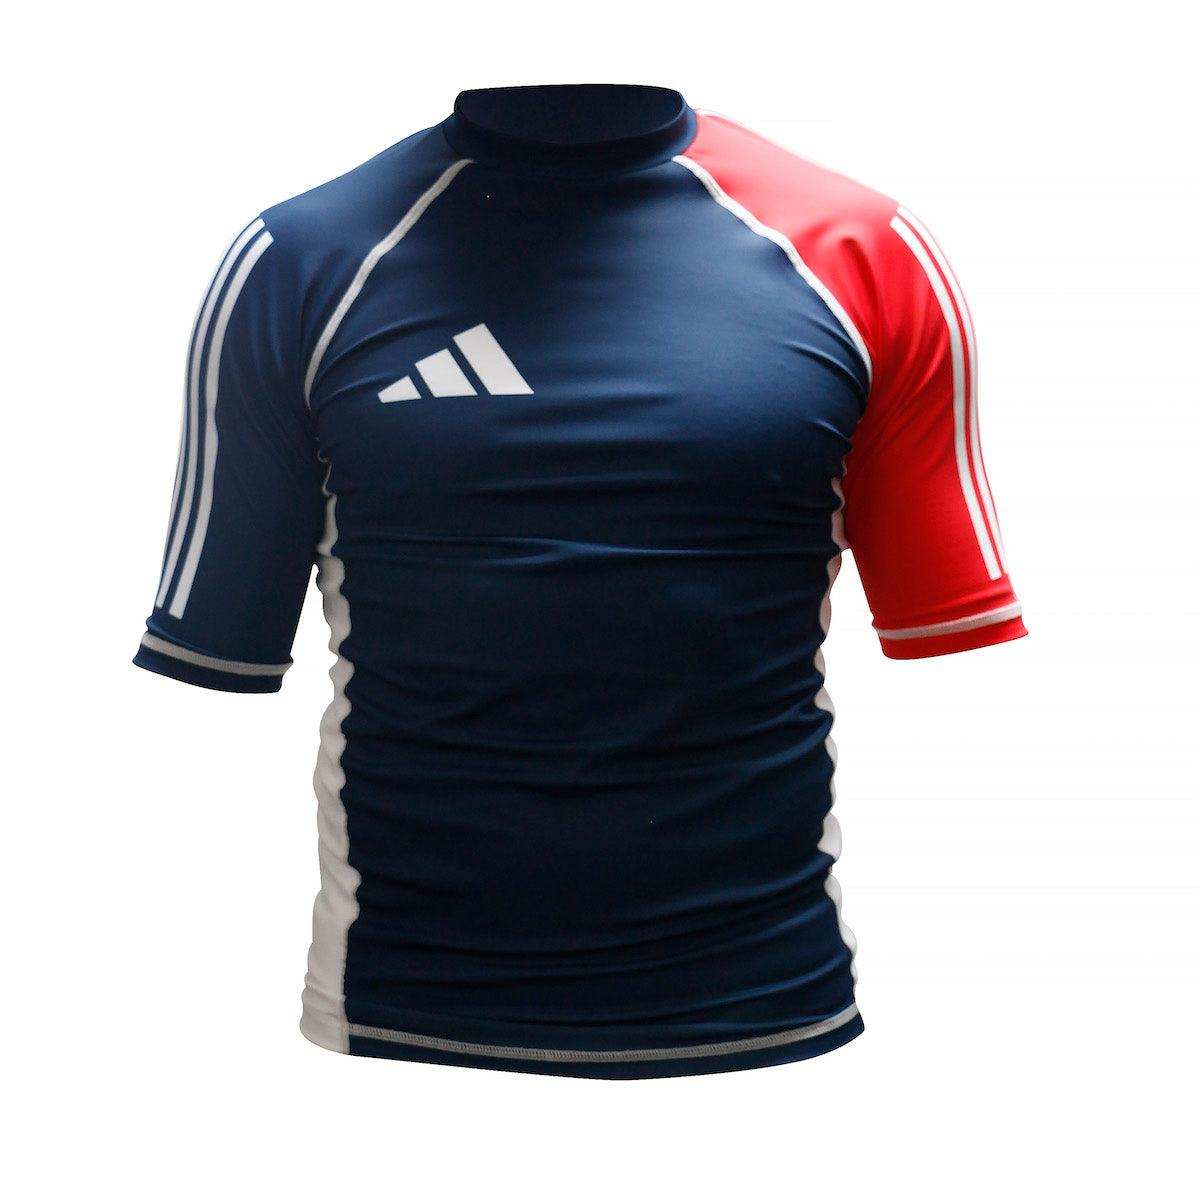 Rashguard Manches Courtes Adidas - Bleu/Blanc/Rouge ADICSR01